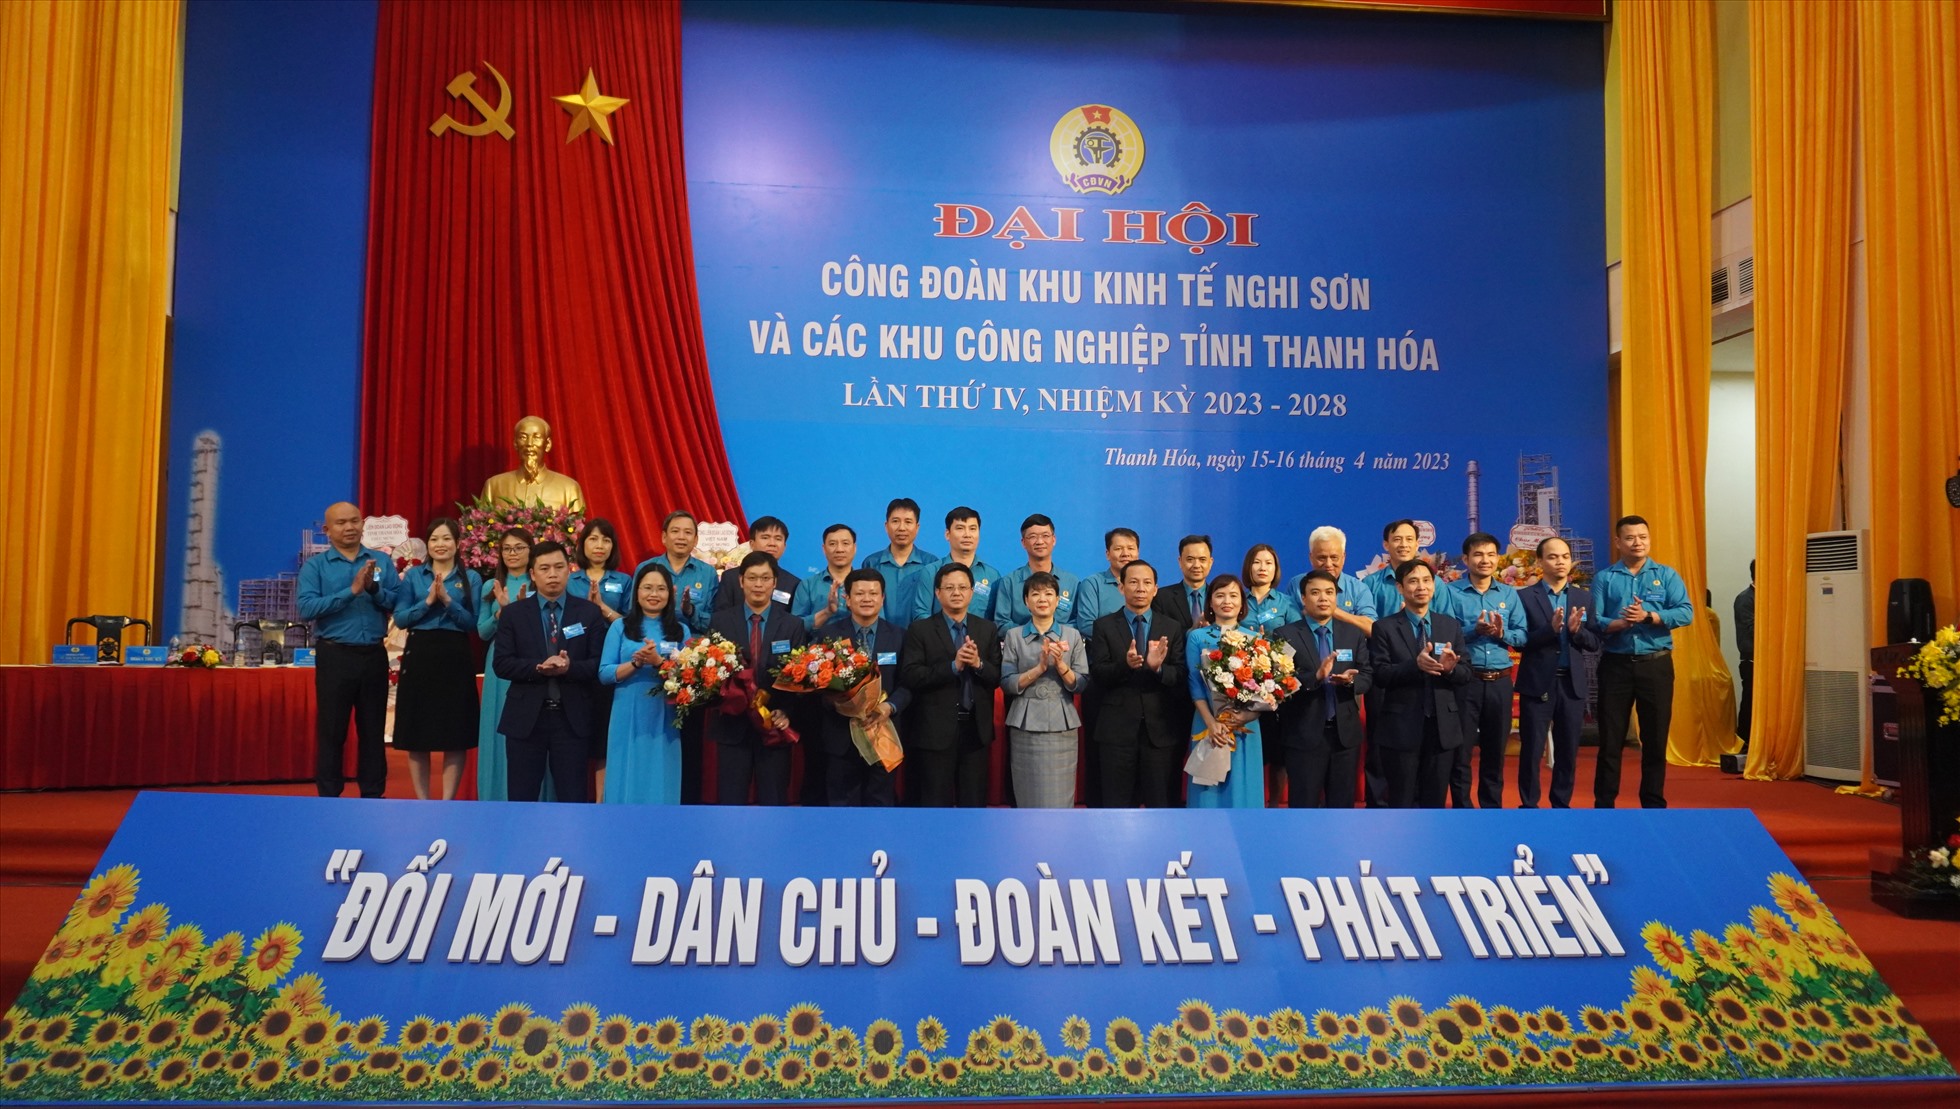 Ra mắt Ban Chấp hành Công đoàn Khu Kinh tế Nghi Sơn và các Khu công nghiệp tỉnh Thanh Hóa khoá IV (nhiệm kỳ 2023 - 2028). Ảnh: Quách Du